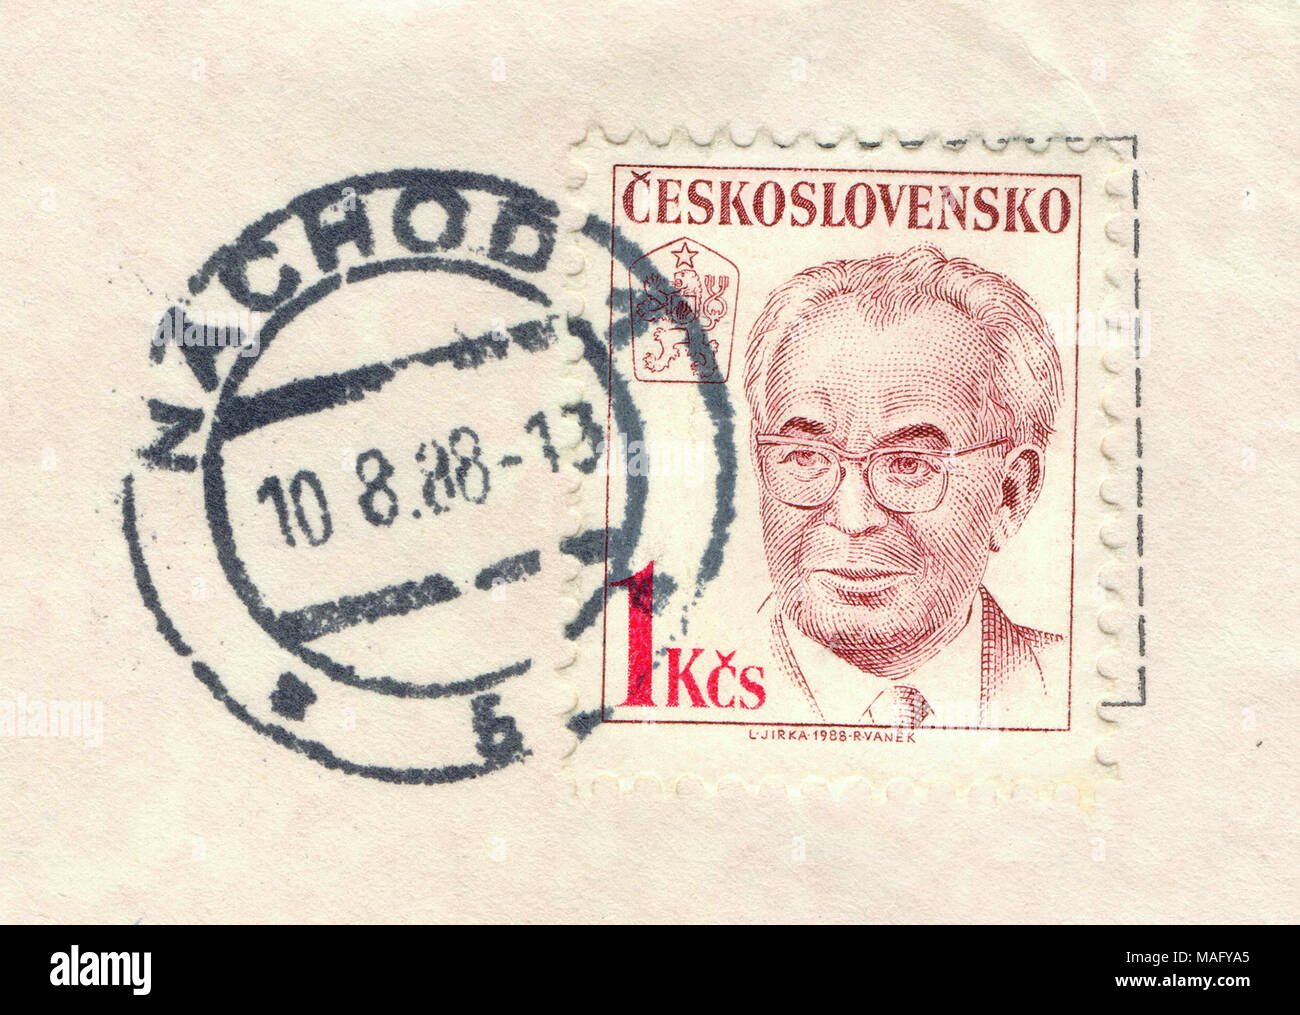 Gustav Husak (1913-1991), le président, de République tchèque, timbre imprimé en 1988, Prague, République tchèque la Tchécoslovaquie (maintenant) Banque D'Images